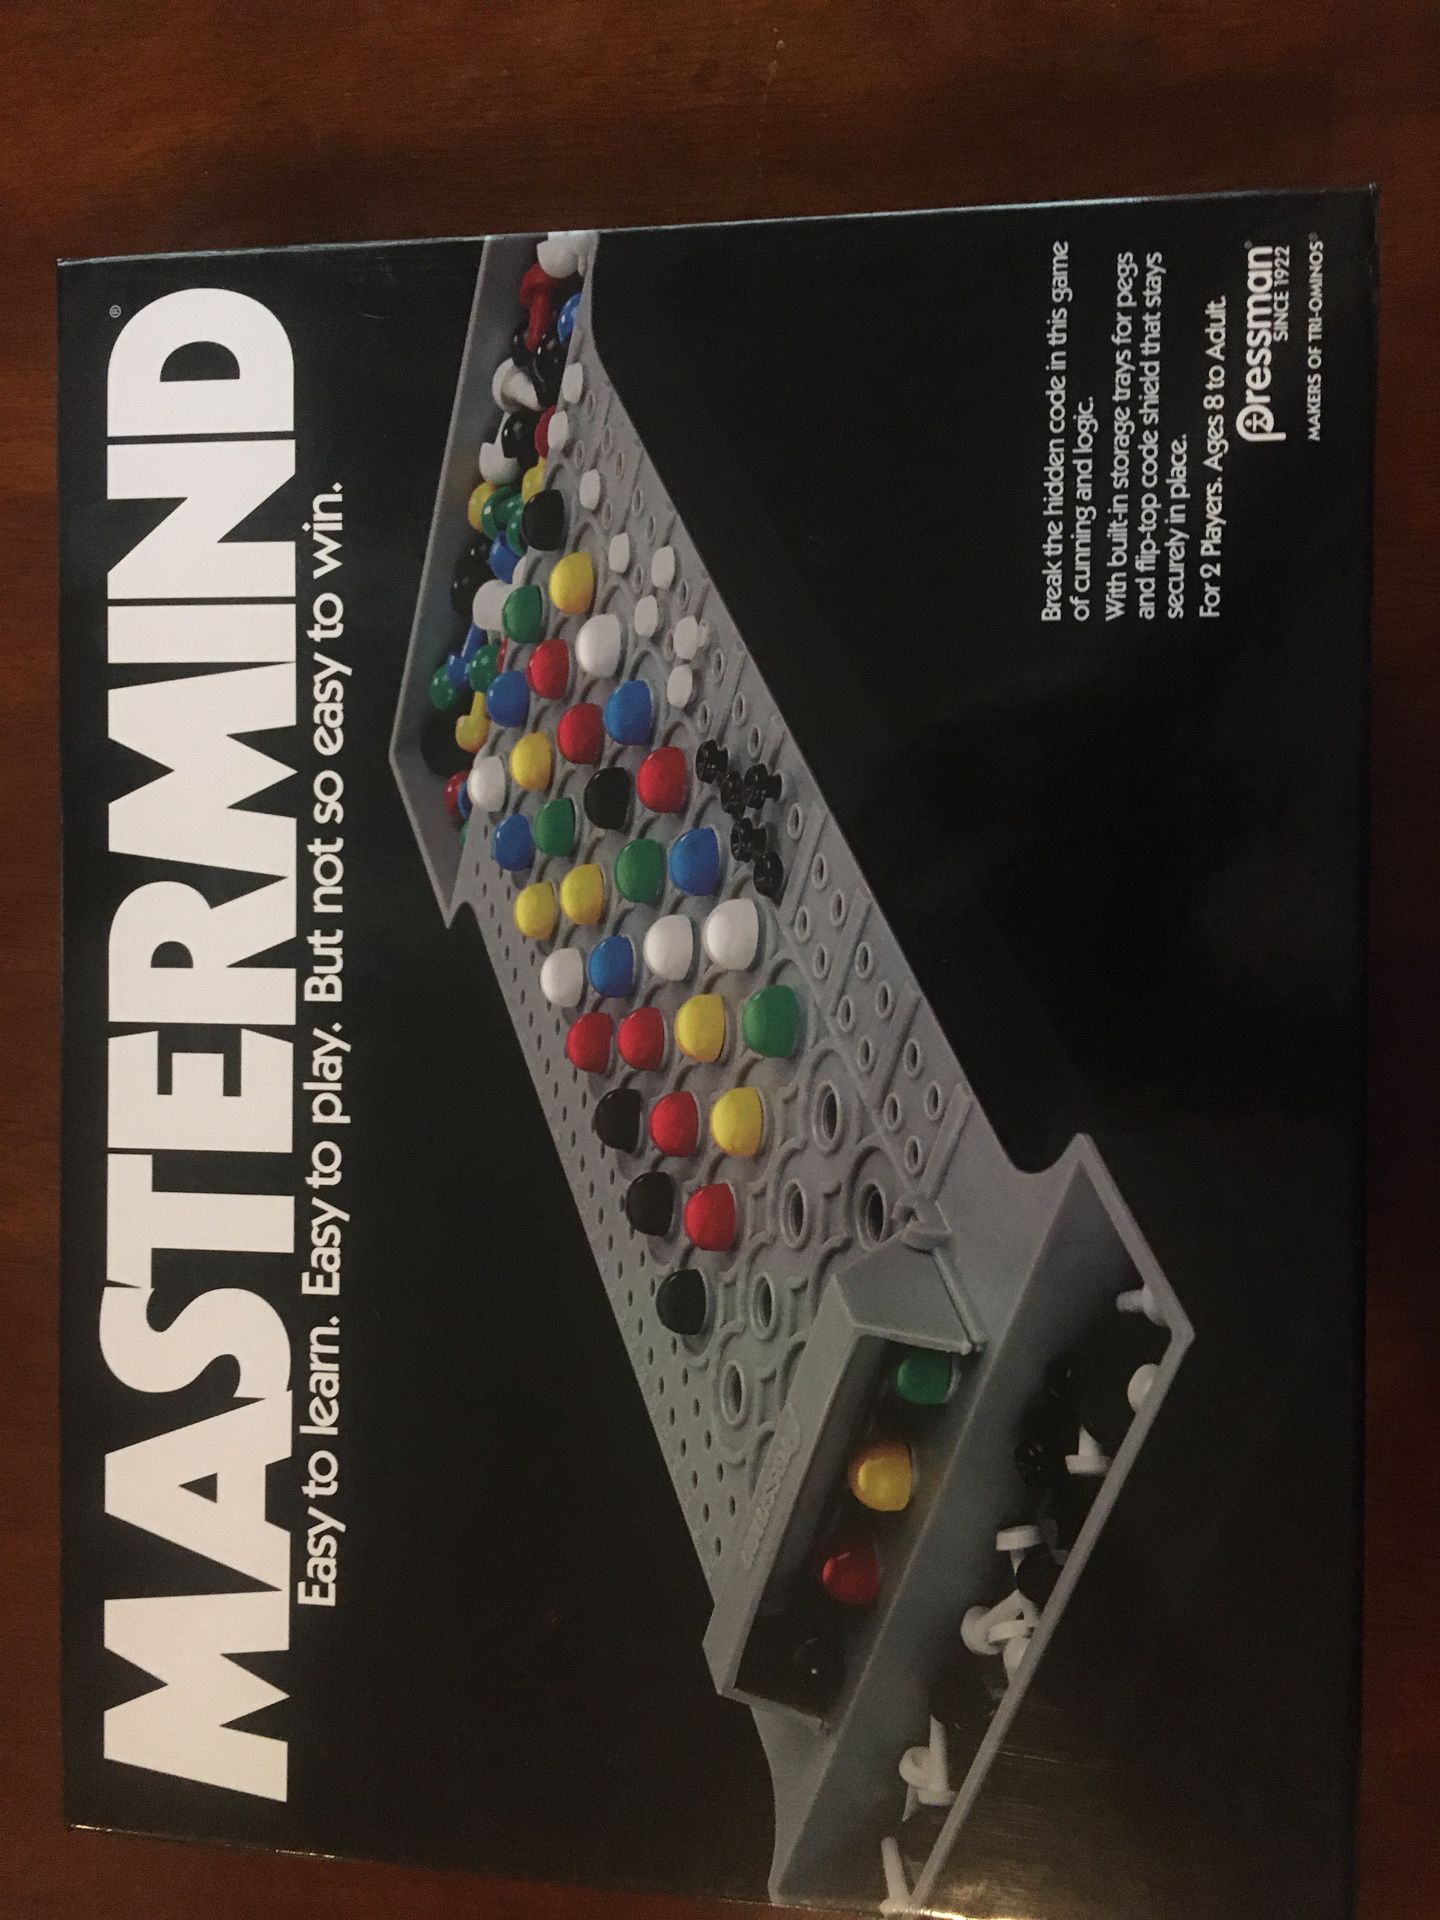 Mastermind Board Game. Super fun.